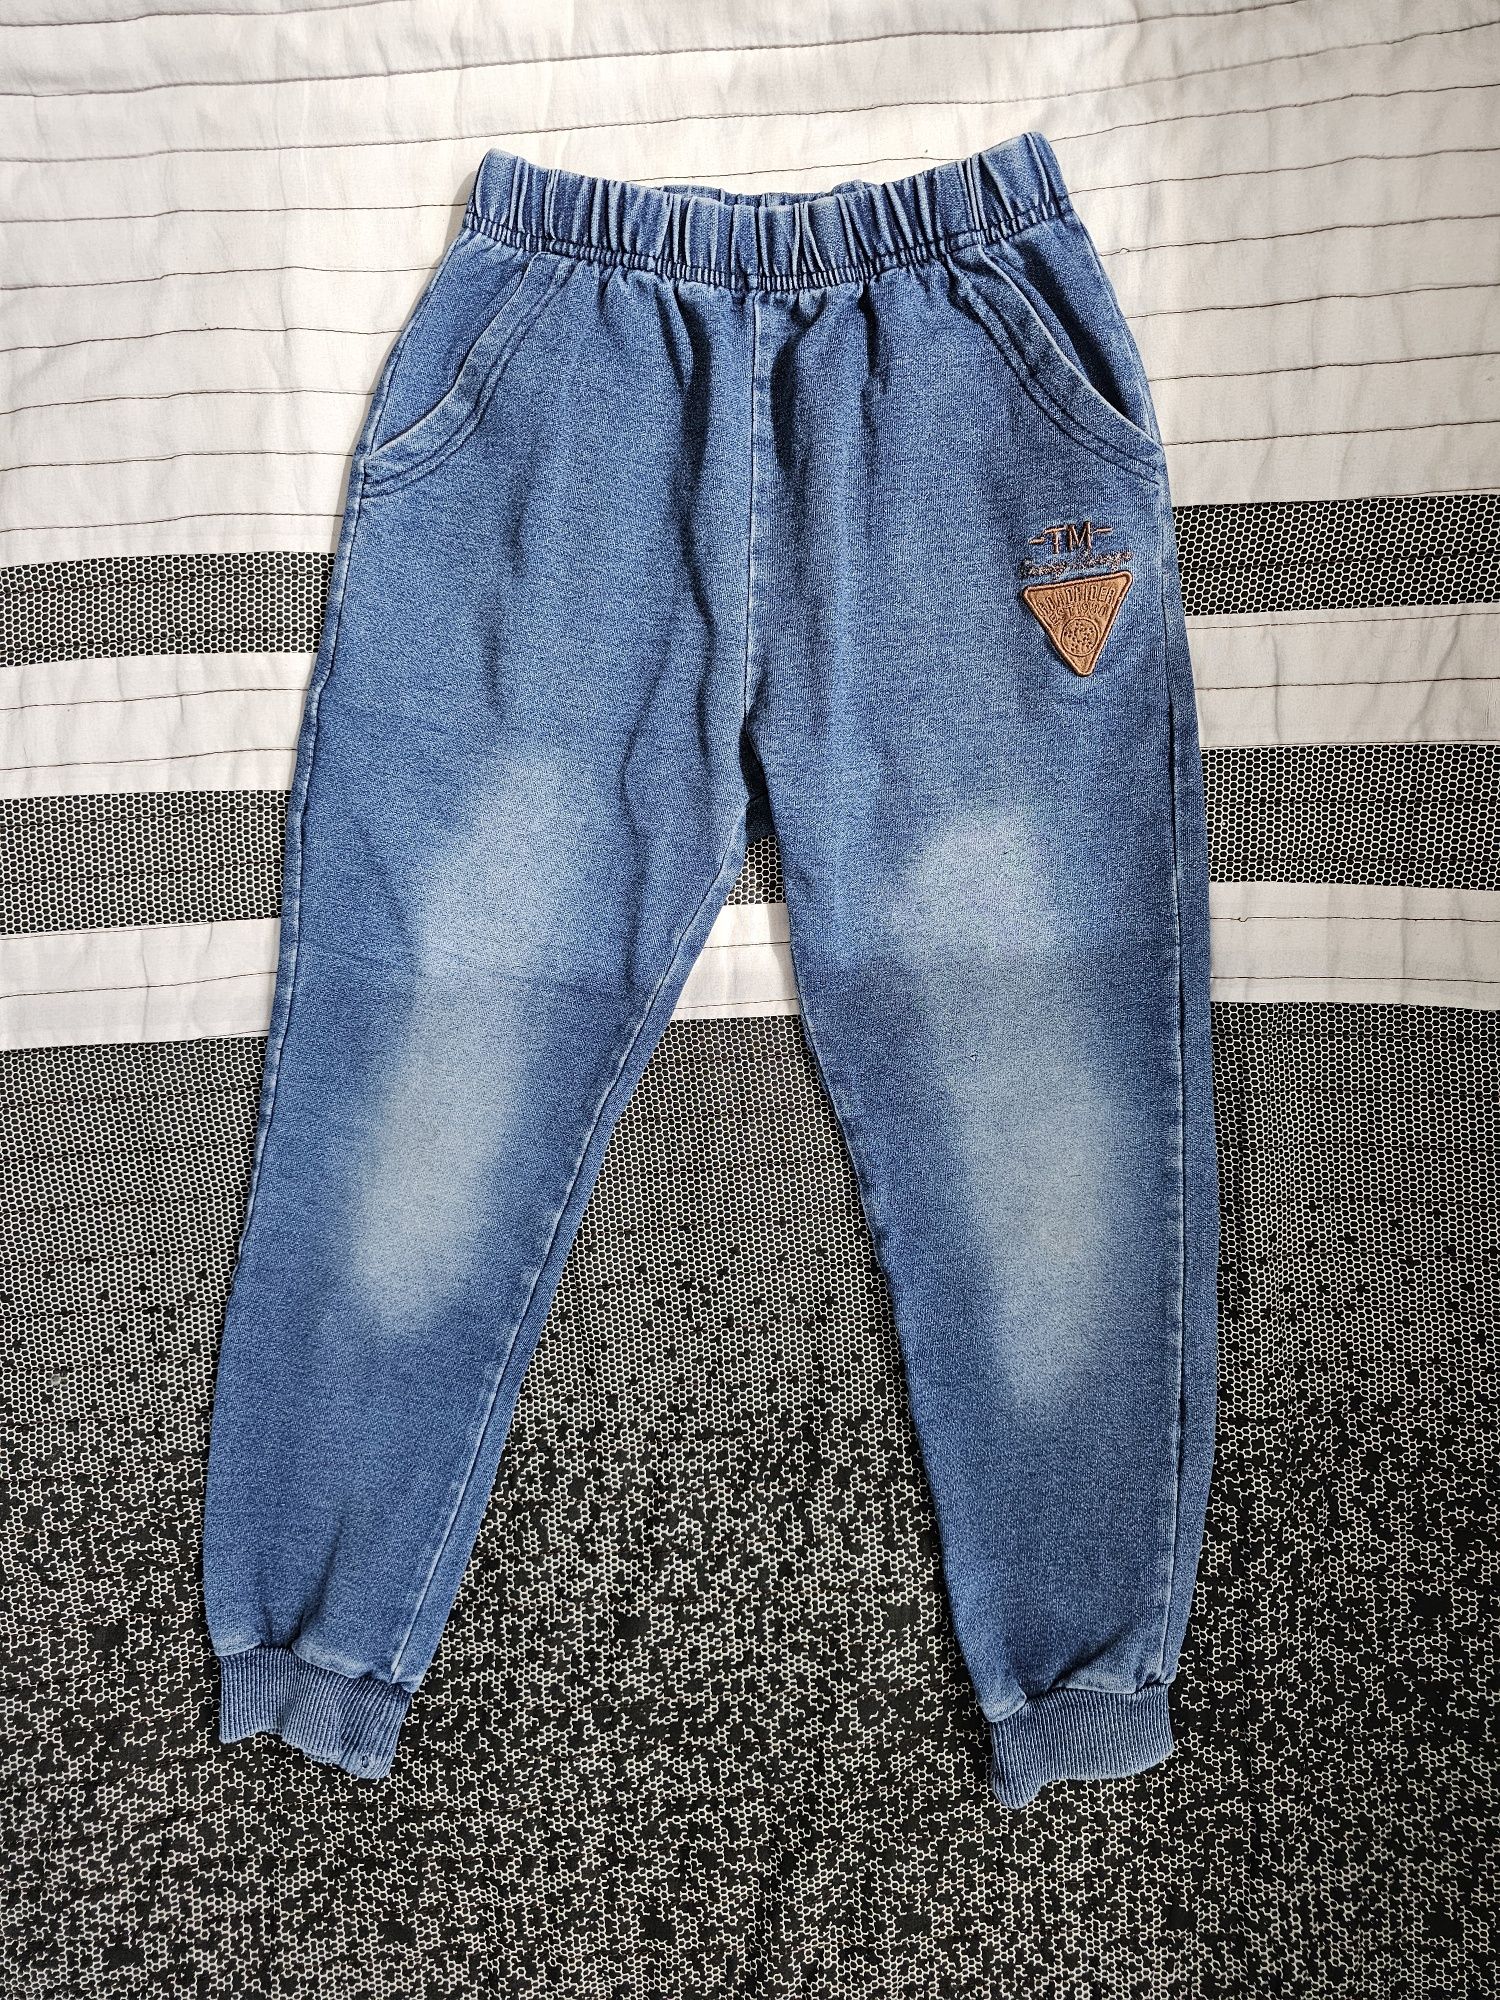 Jeans 128 spodnie